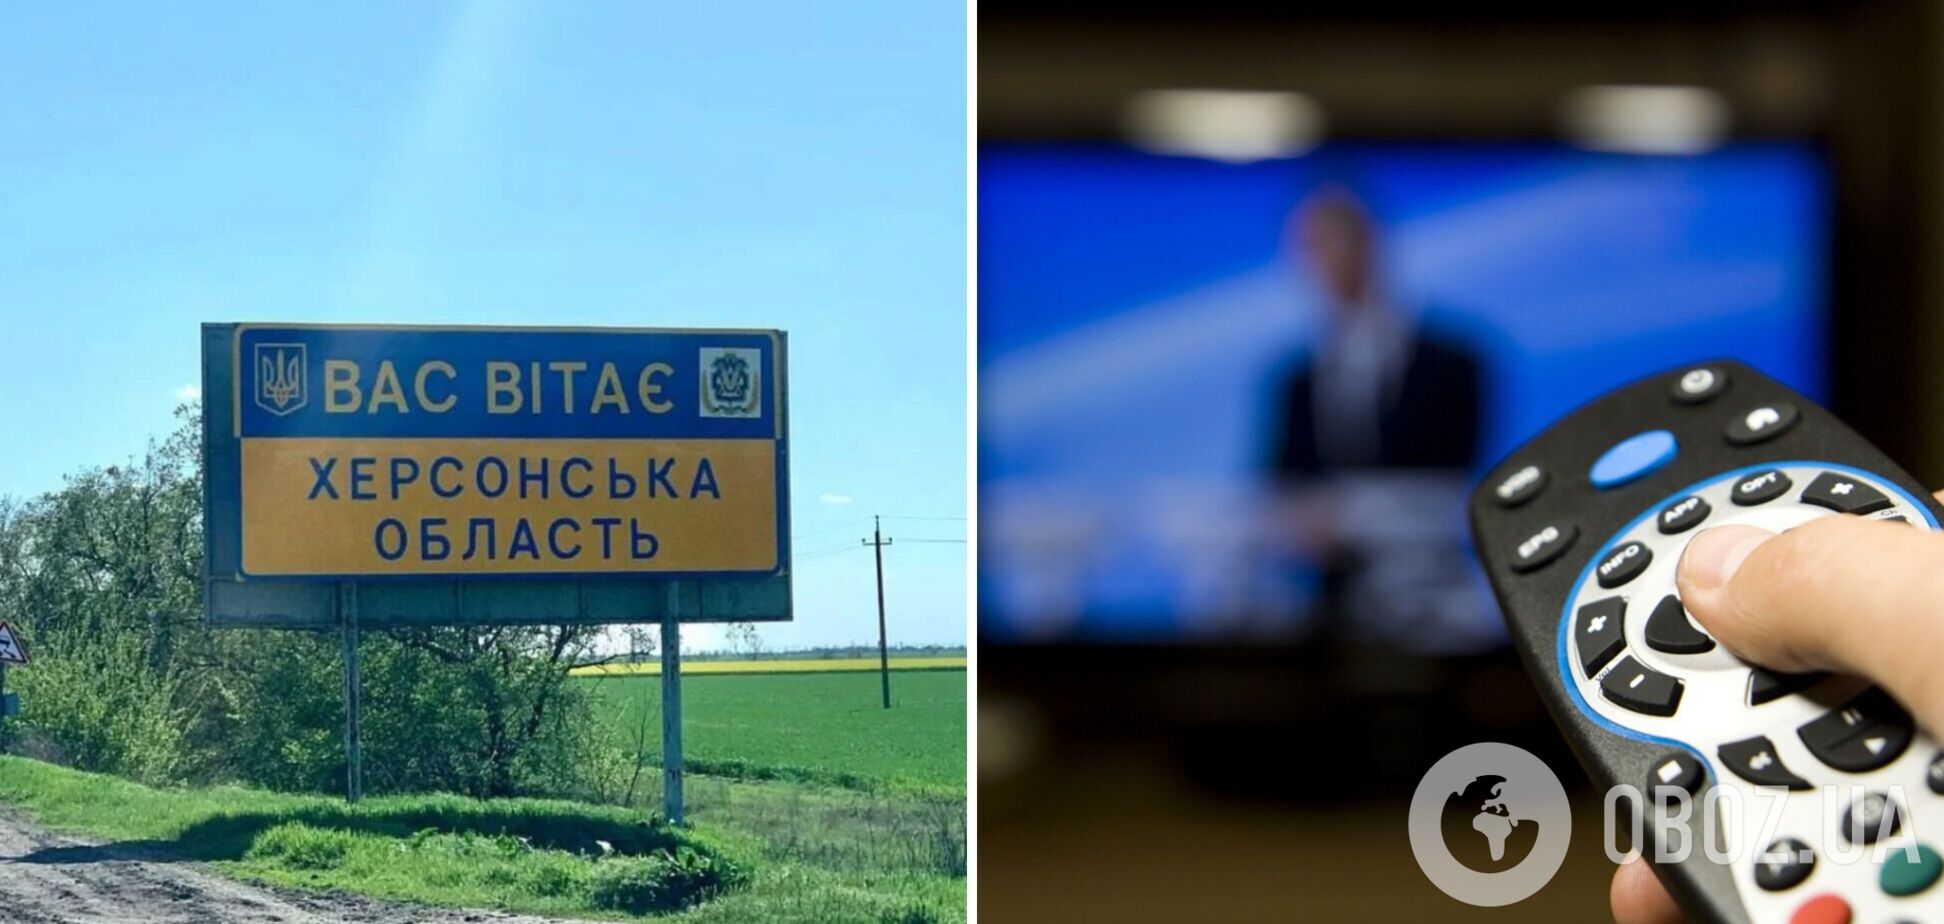 Жителям Херсонщины уже включили украинское телевидение: как найти сигнал